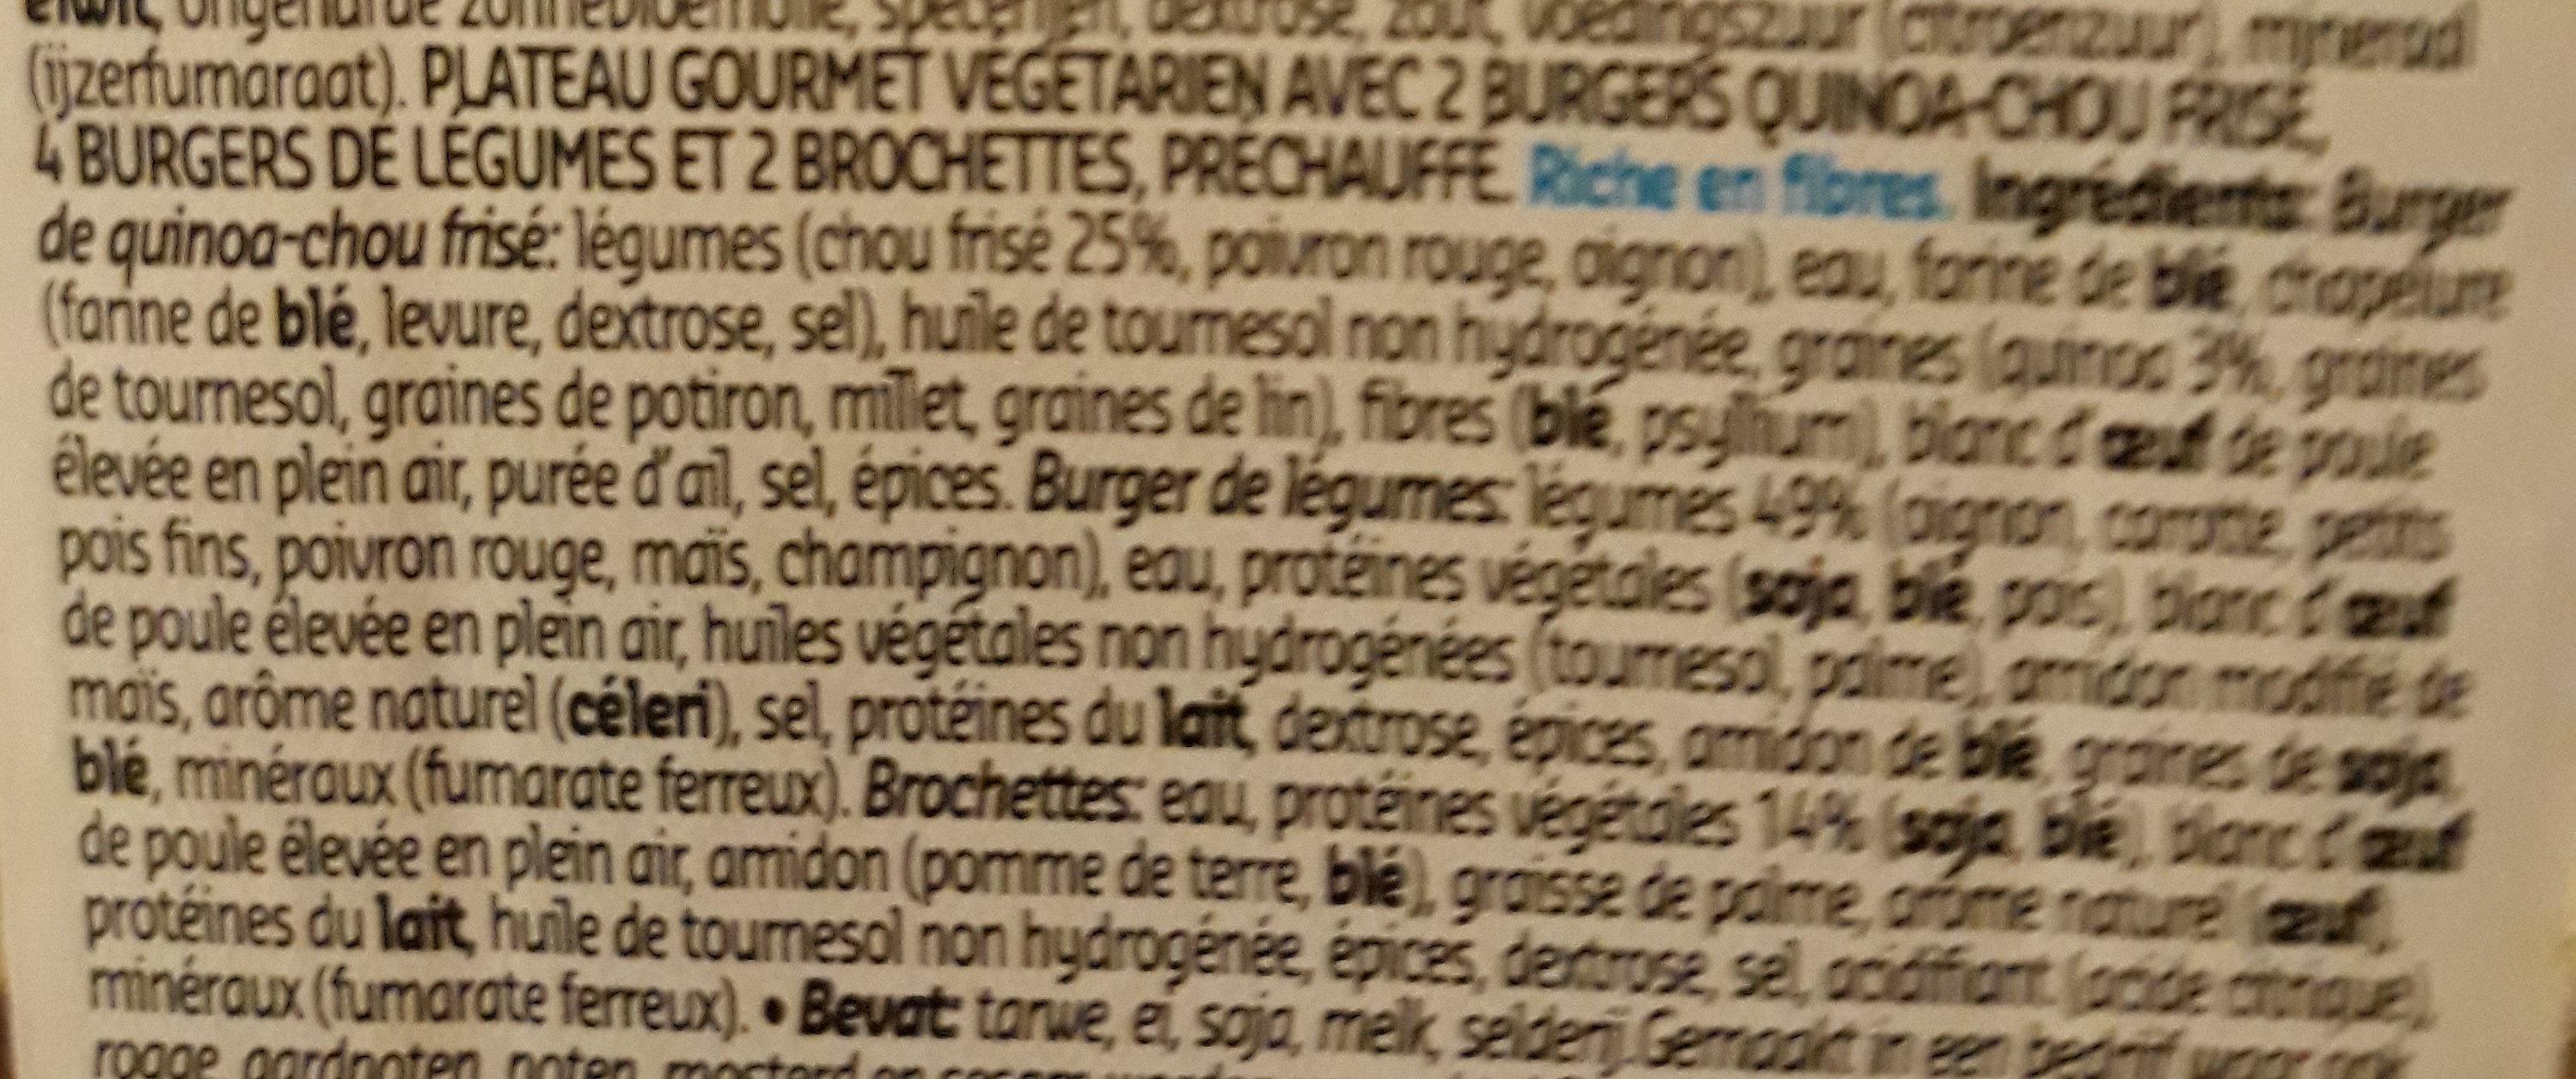 plateau gourmet veggie - Ingrédients - fr